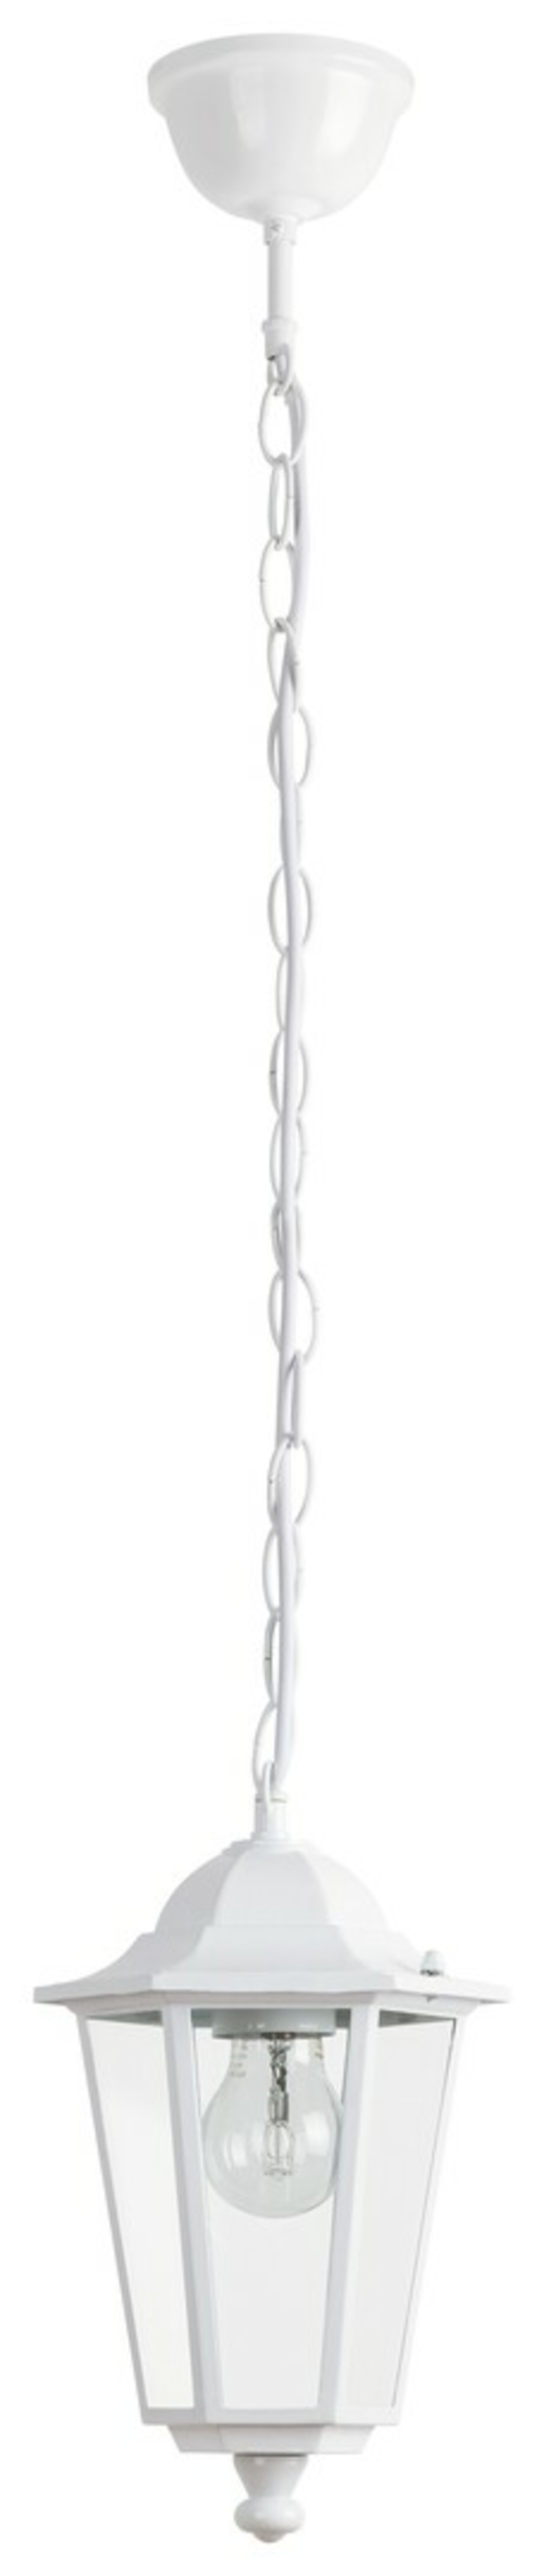 Rabalux venkovní závěsné svítidlo Velence E27 1x MAX 60W bílá 8207